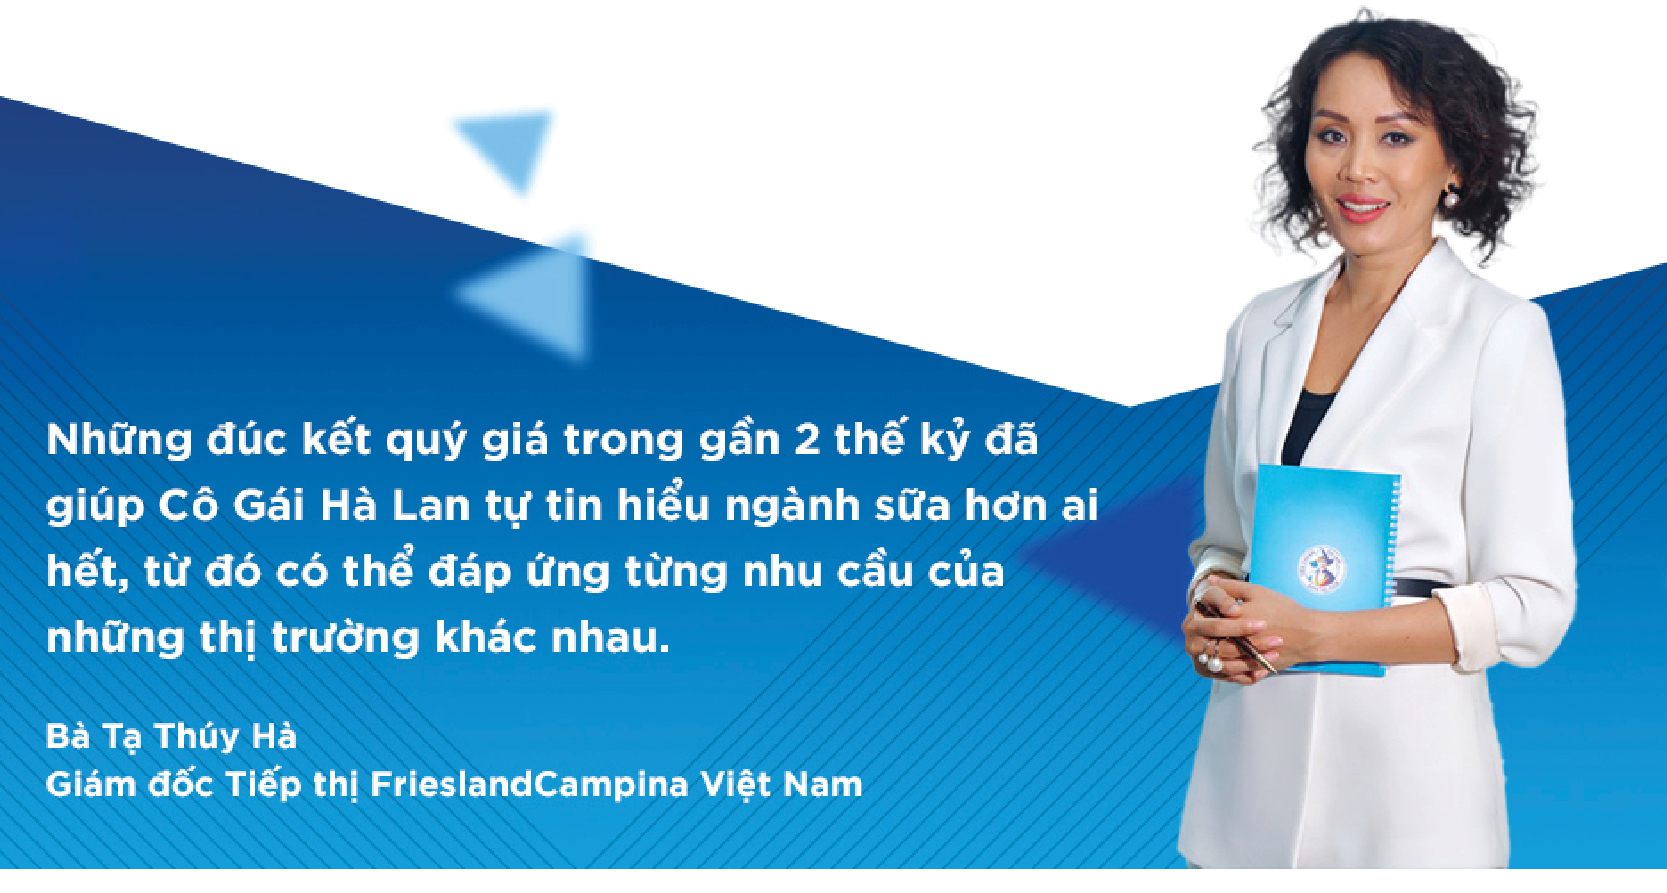 Giám Đốc Tiếp Thị Frieslandcampina Việt Nam: Thành Công Vì Thấu Hiểu Khách  Hàng, Sản Phẩm Vượt Trội - Tuổi Trẻ Online